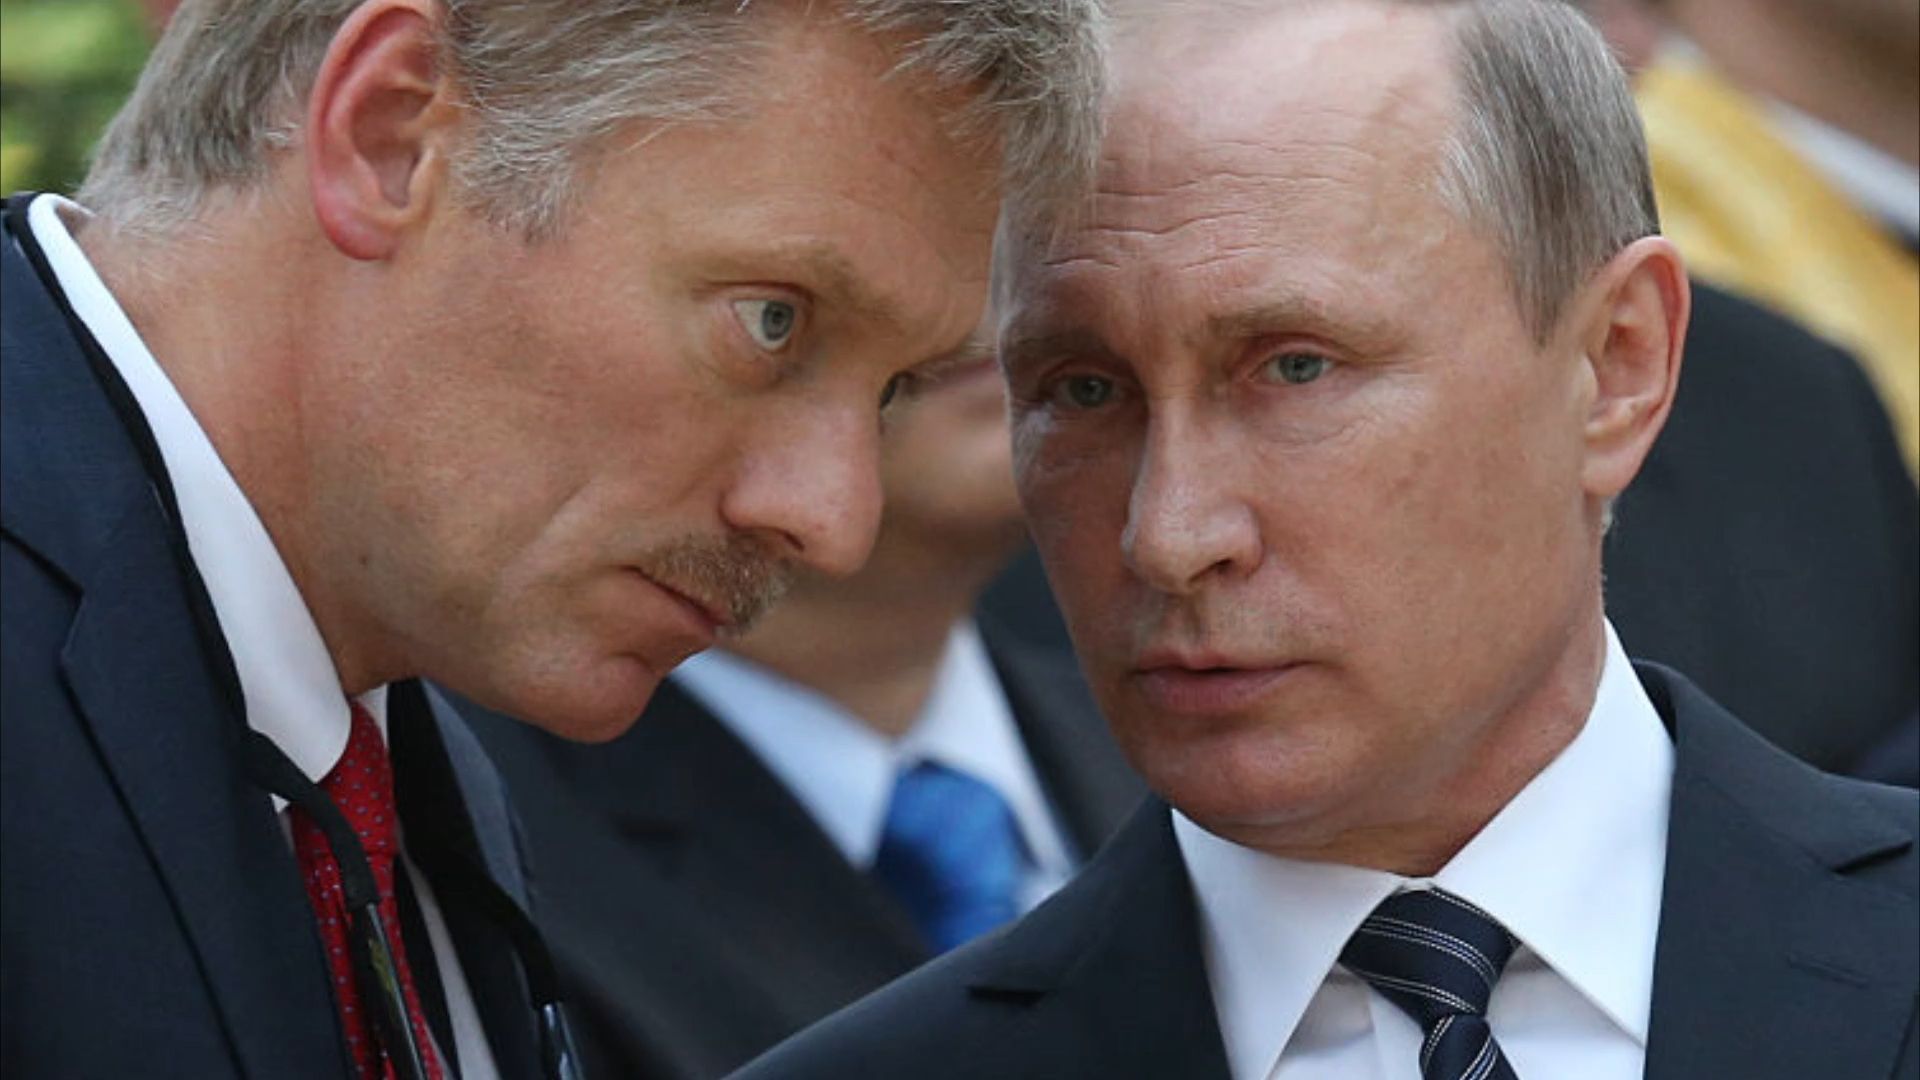 Kreml-Schutz: Peskows Sohn drückt sich vor Militäreinzug!